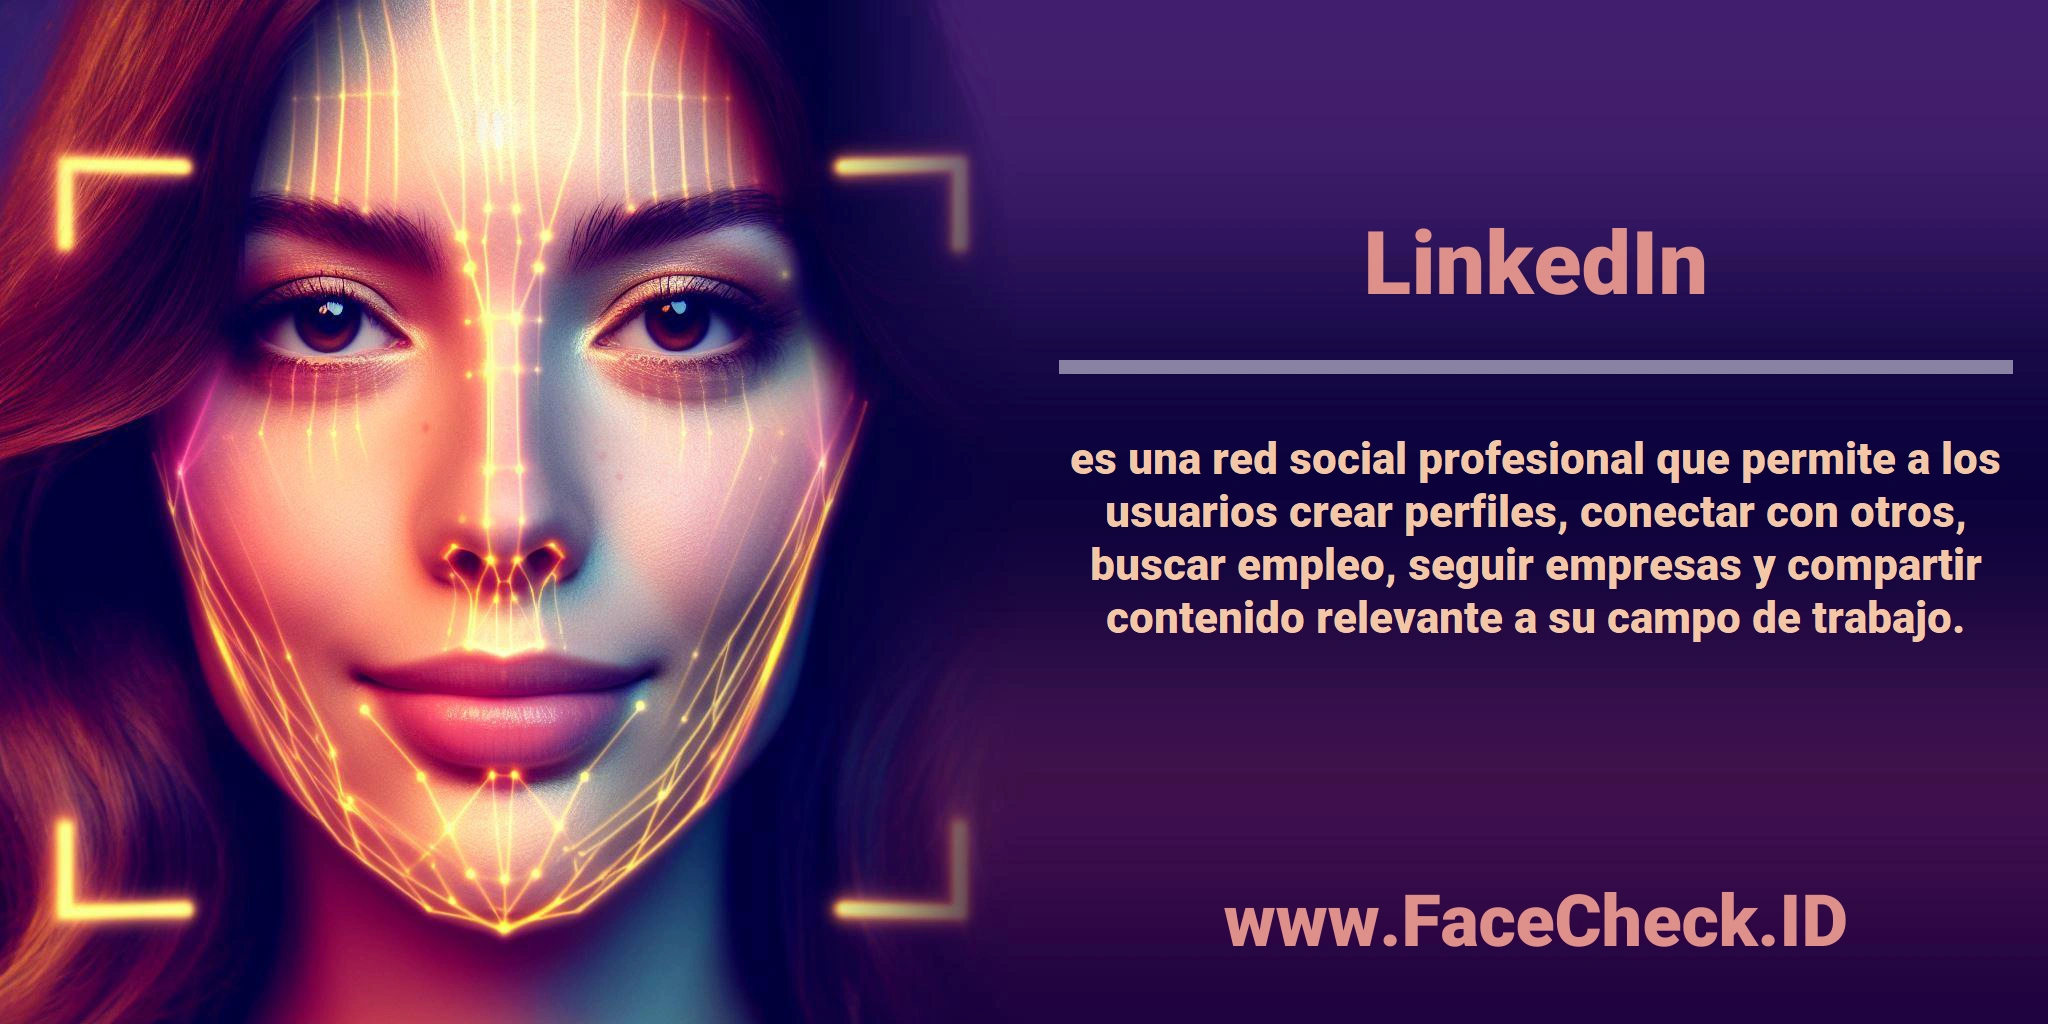 <b>LinkedIn</b> es una red social profesional que permite a los usuarios crear perfiles, conectar con otros, buscar empleo, seguir empresas y compartir contenido relevante a su campo de trabajo.